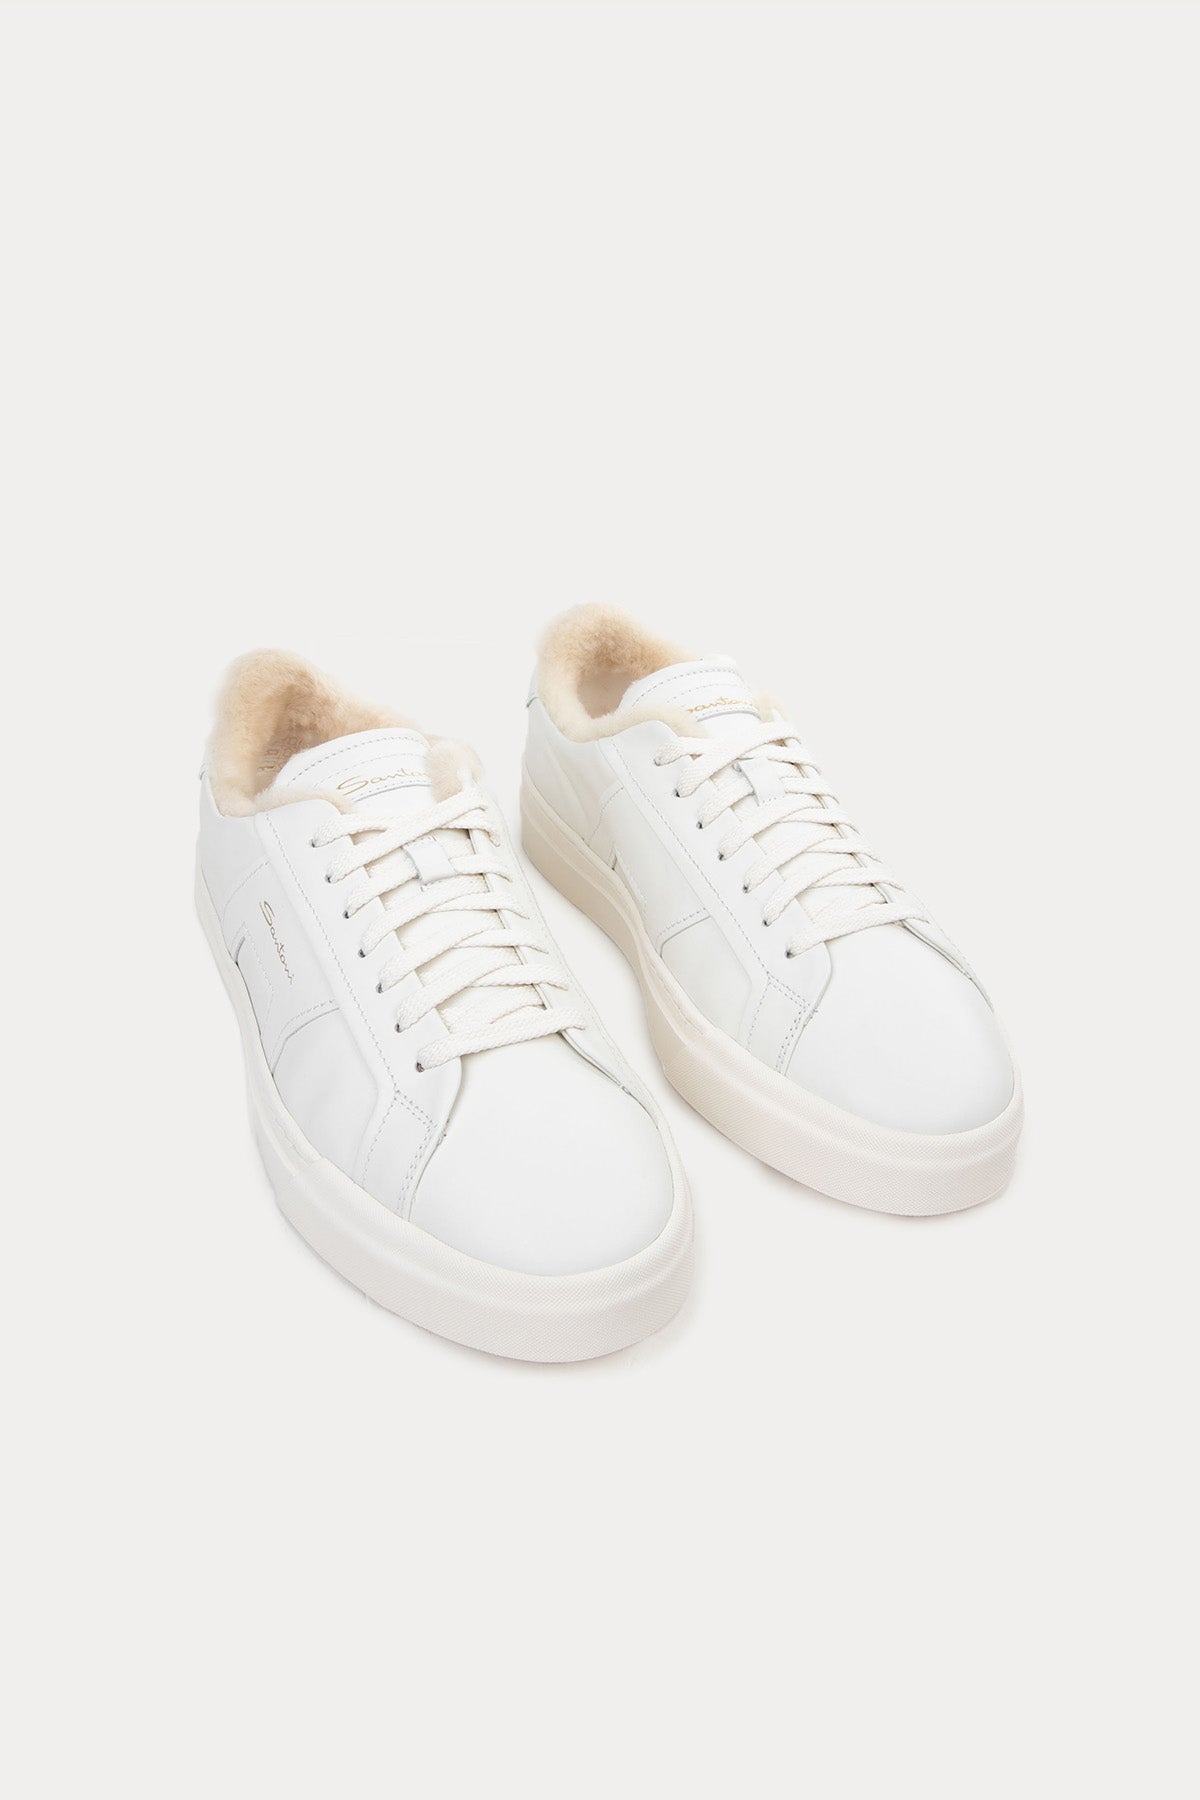 Santoni İçi Kürklü Deri Double Buckle Sneaker Ayakkabı-Libas Trendy Fashion Store